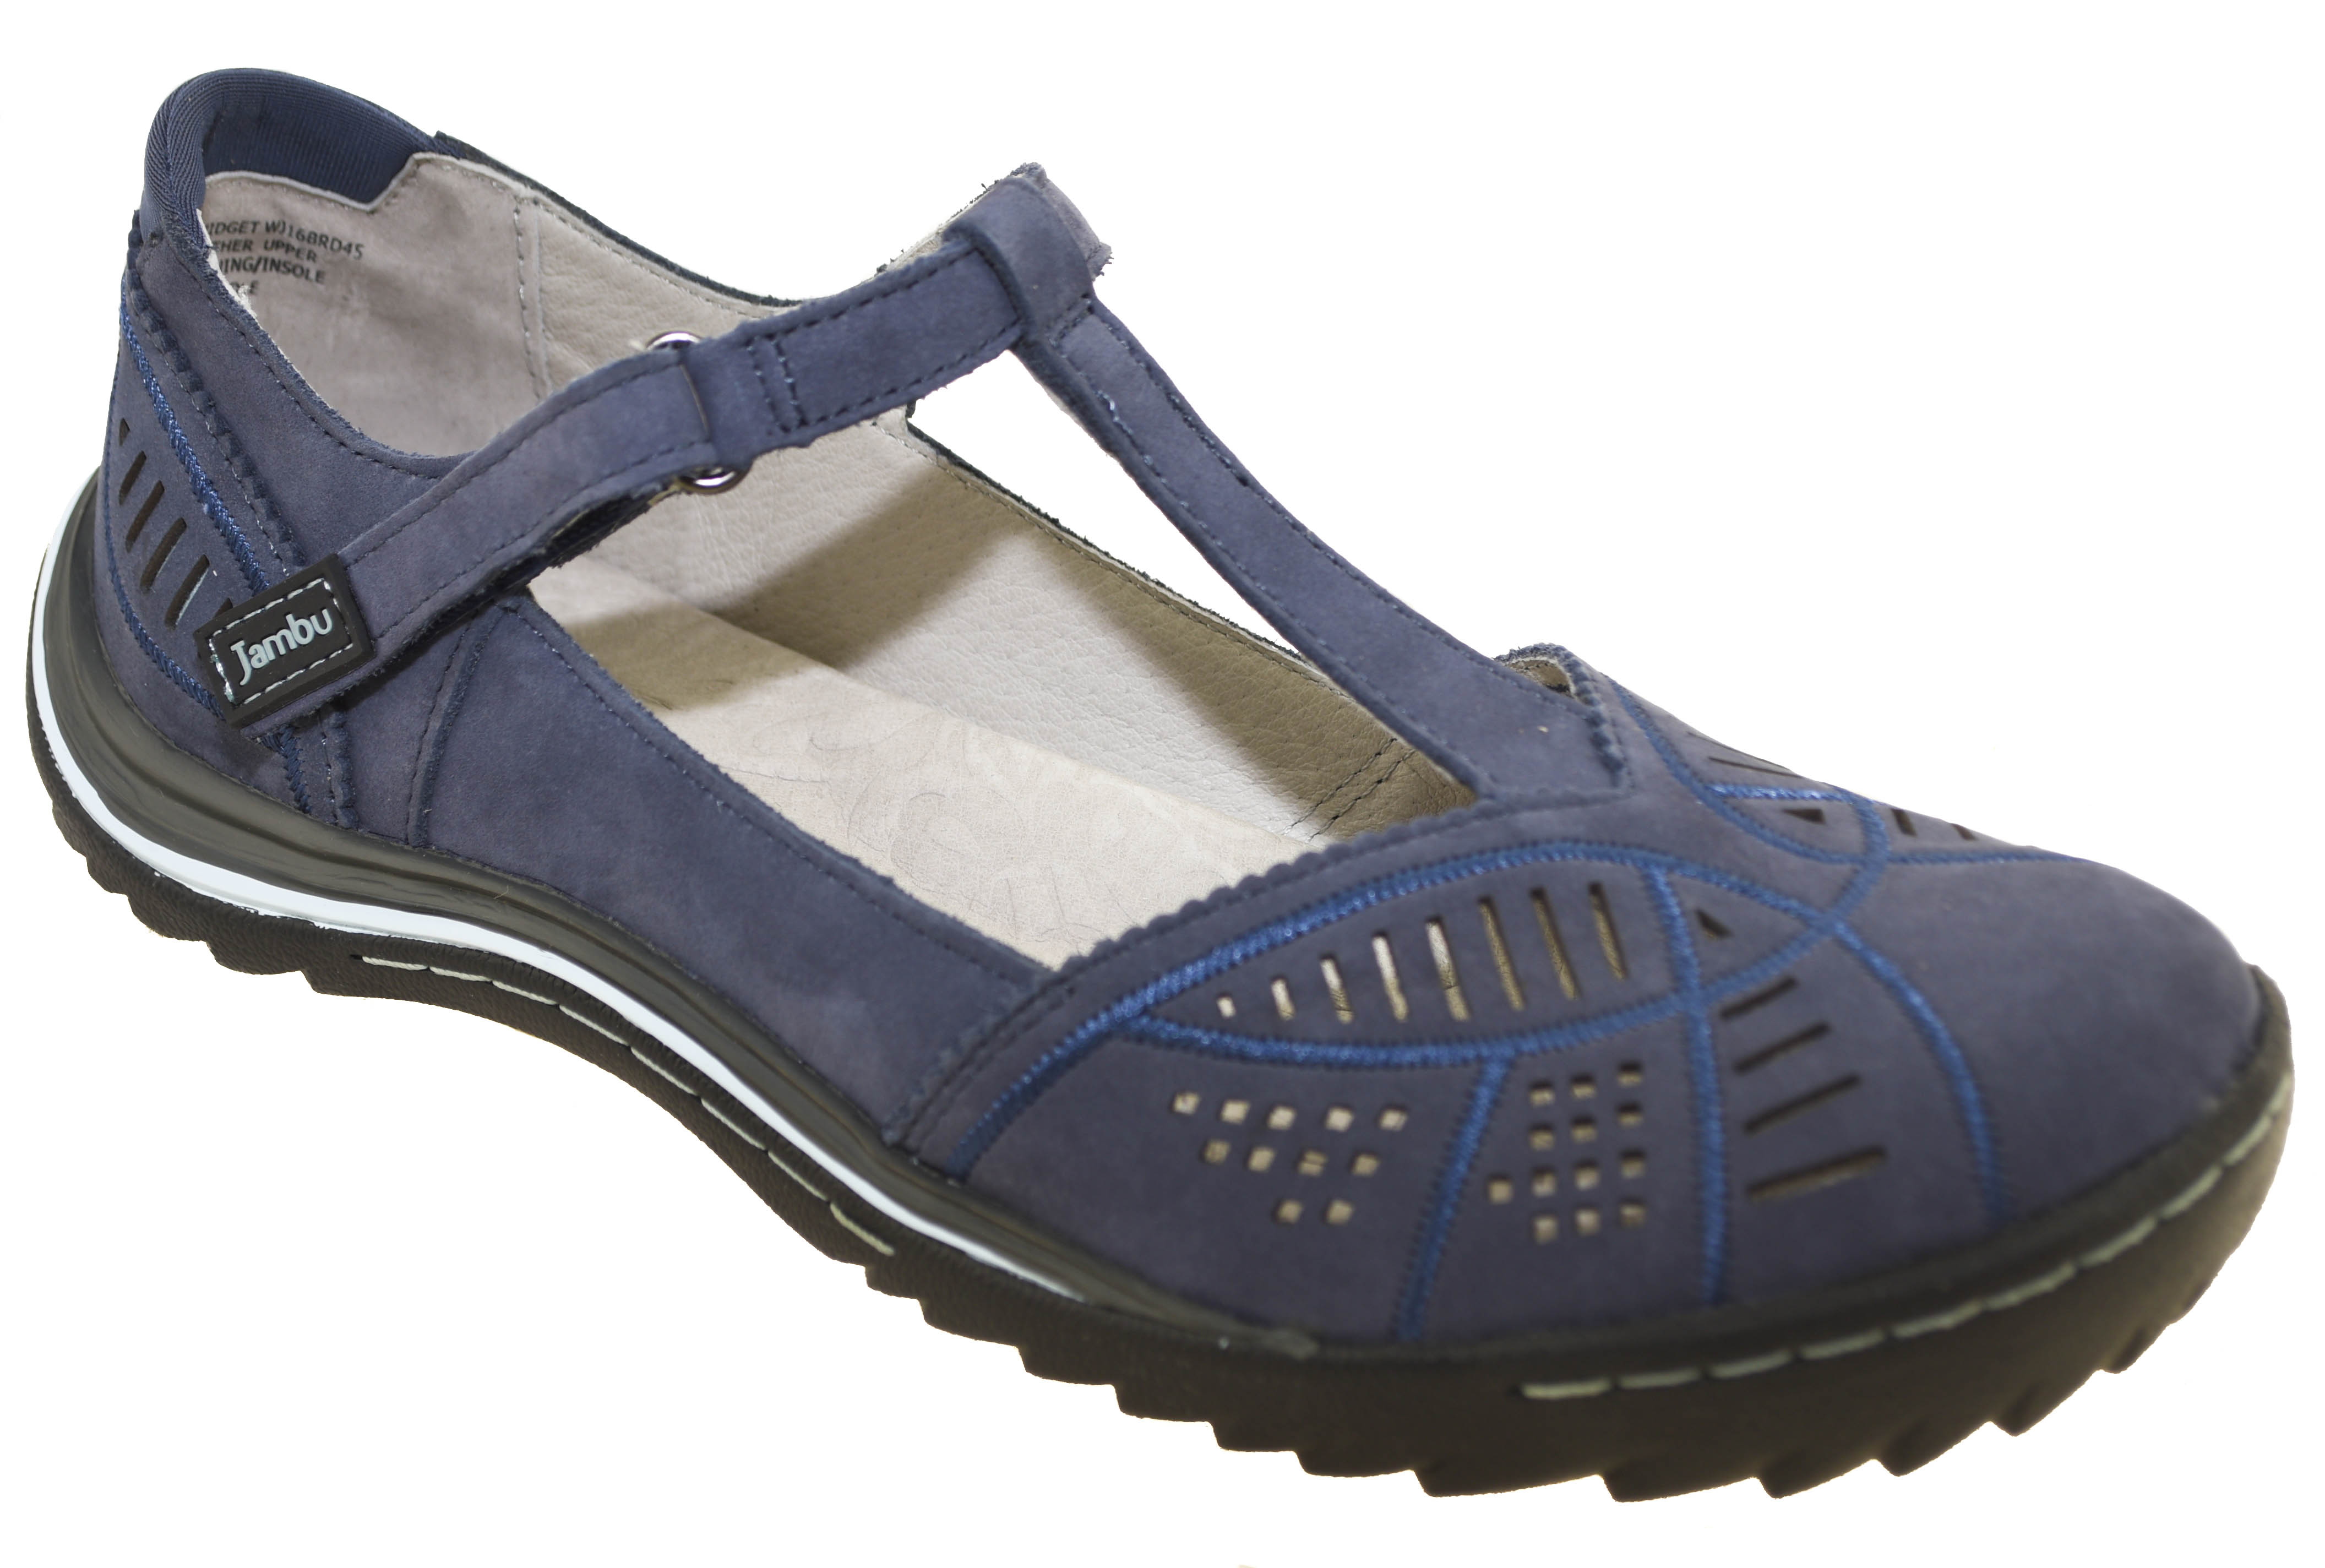 Jambu Women's Bridget Shoes Denim | eBay